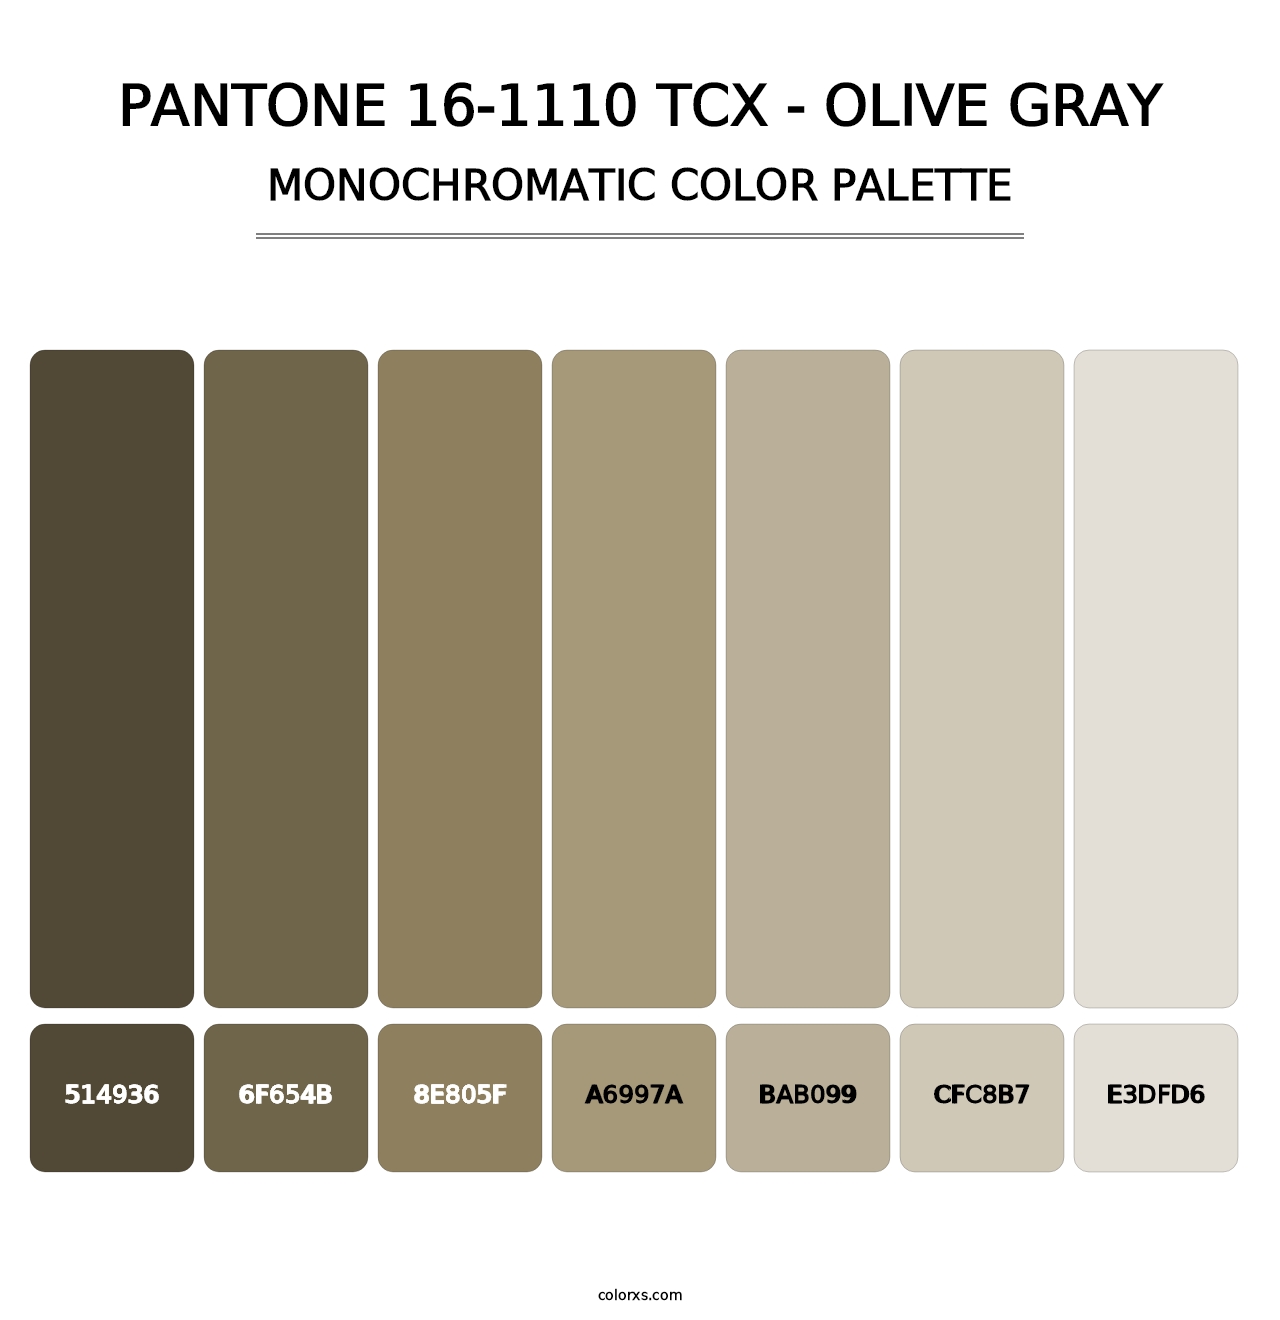 PANTONE 16-1110 TCX - Olive Gray - Monochromatic Color Palette